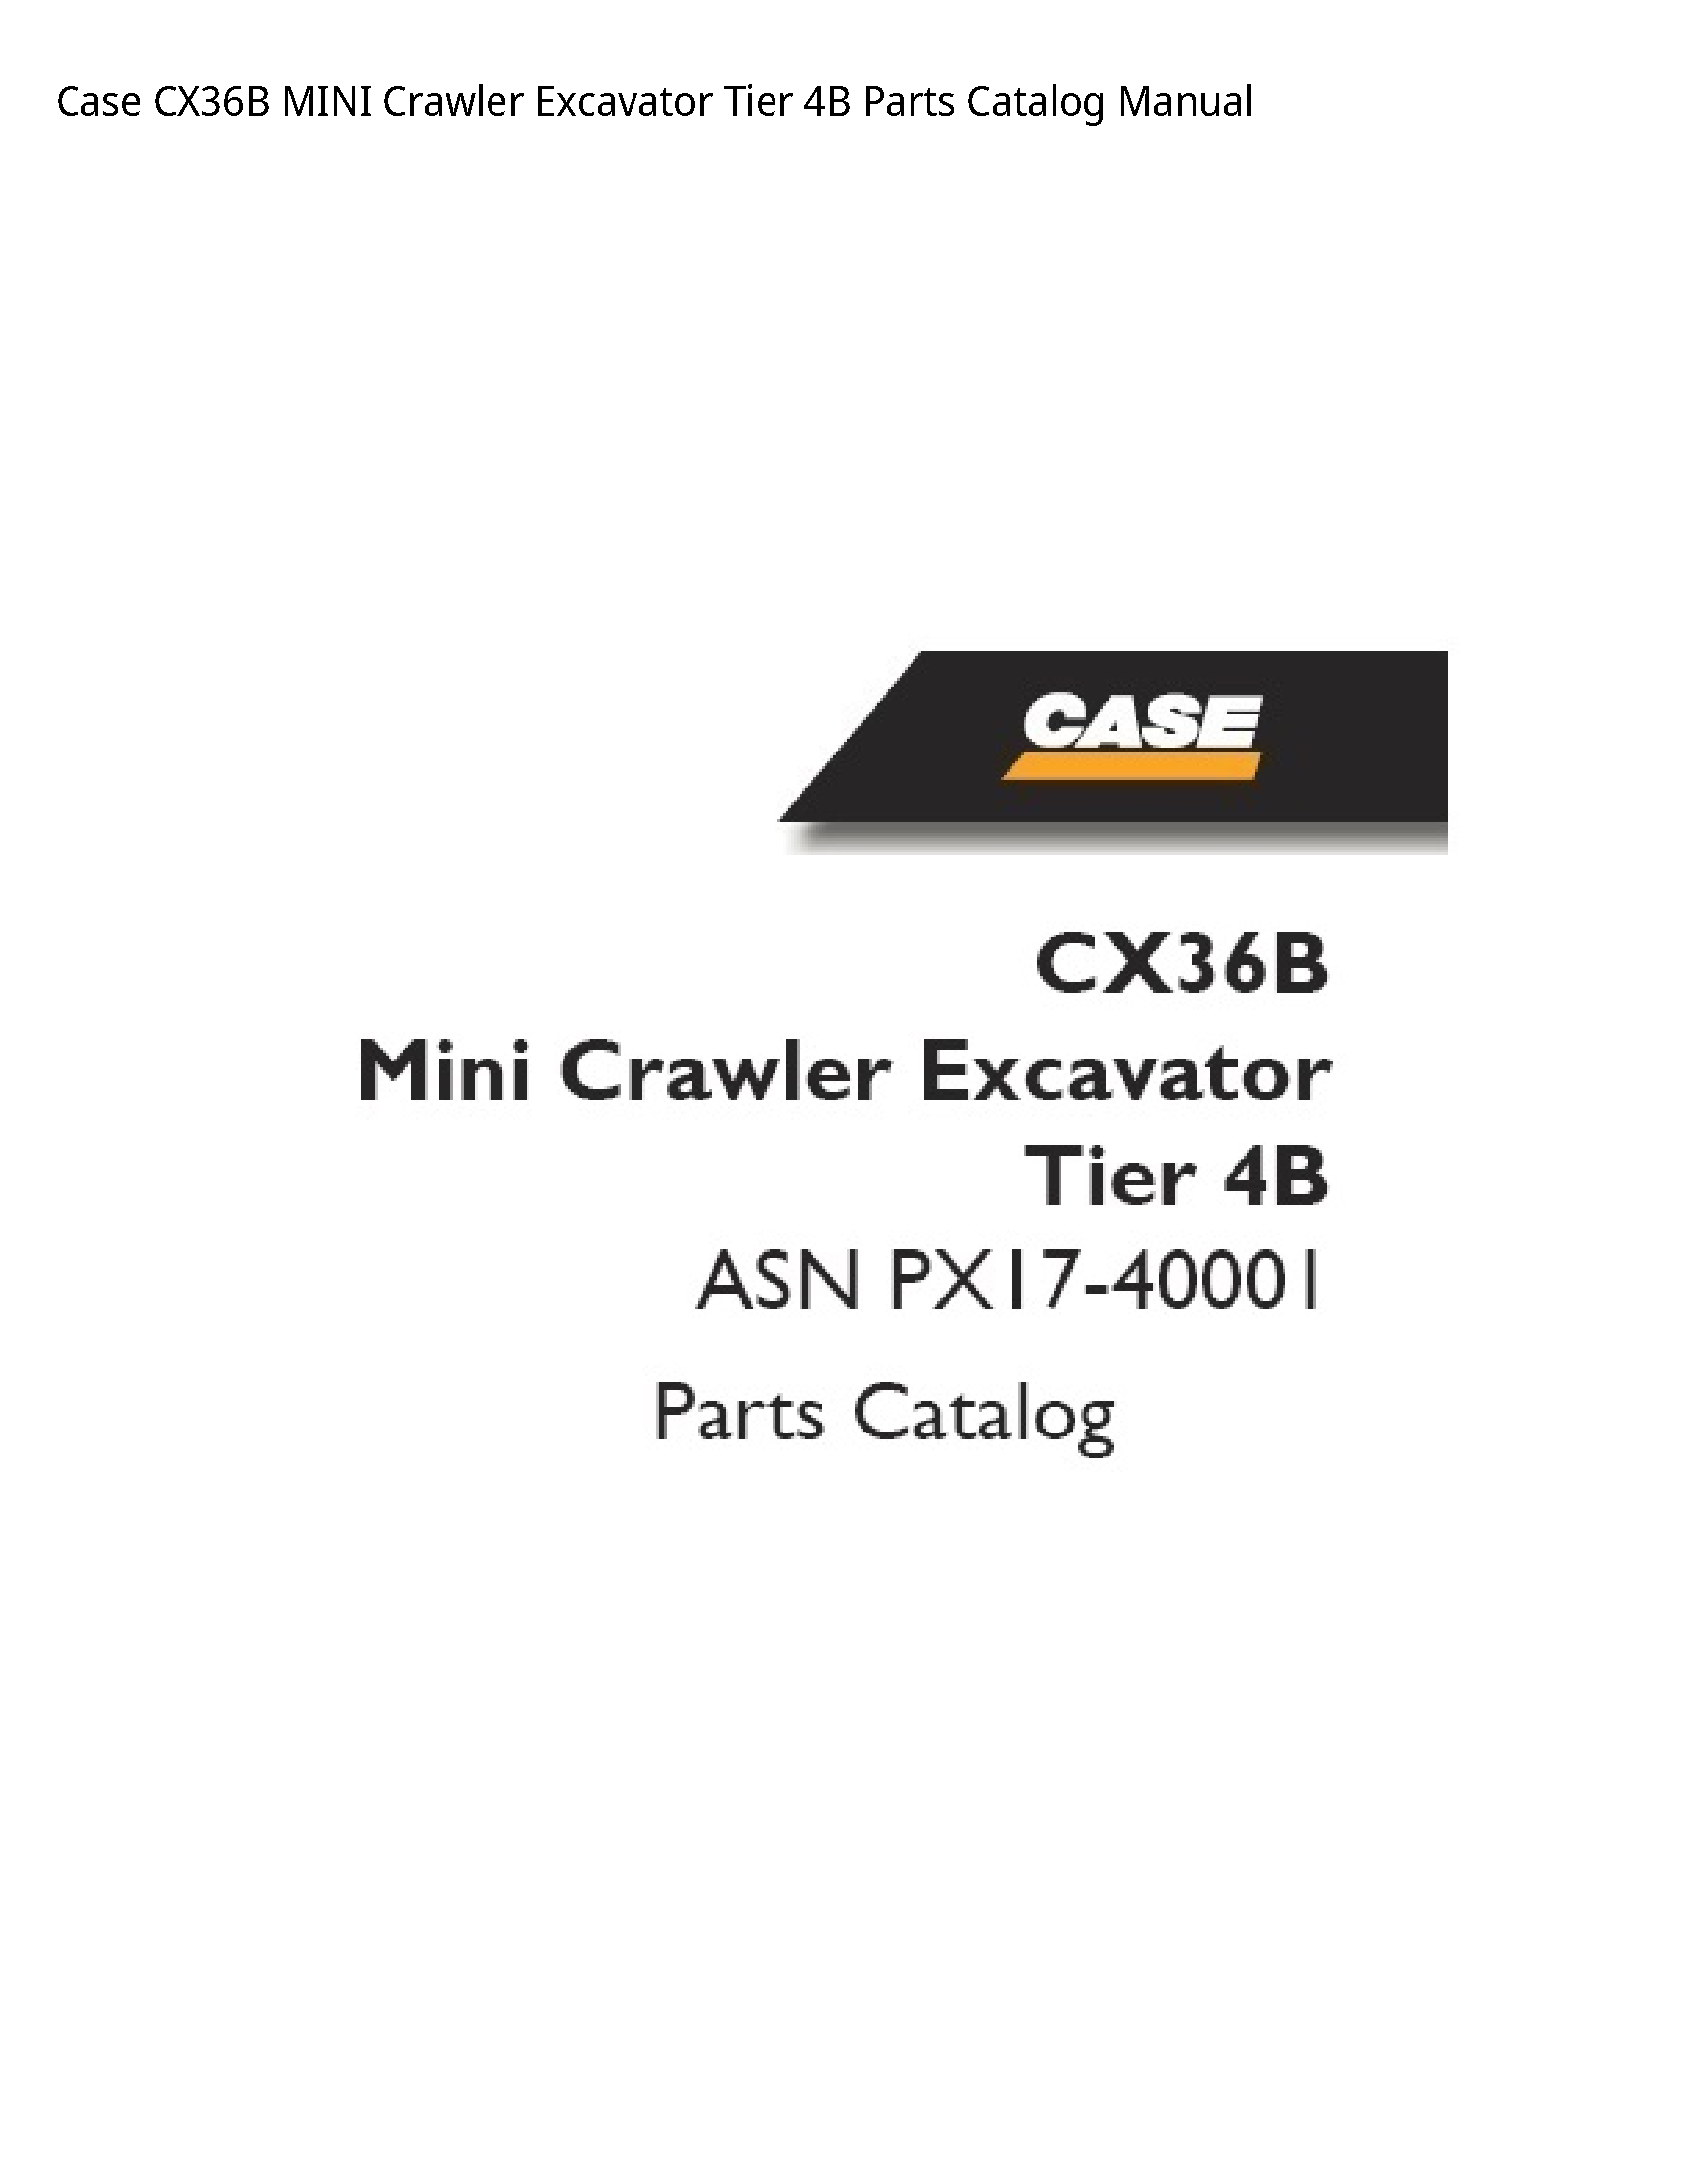 Case/Case IH CX36B MINI Crawler Excavator Tier Parts Catalog manual